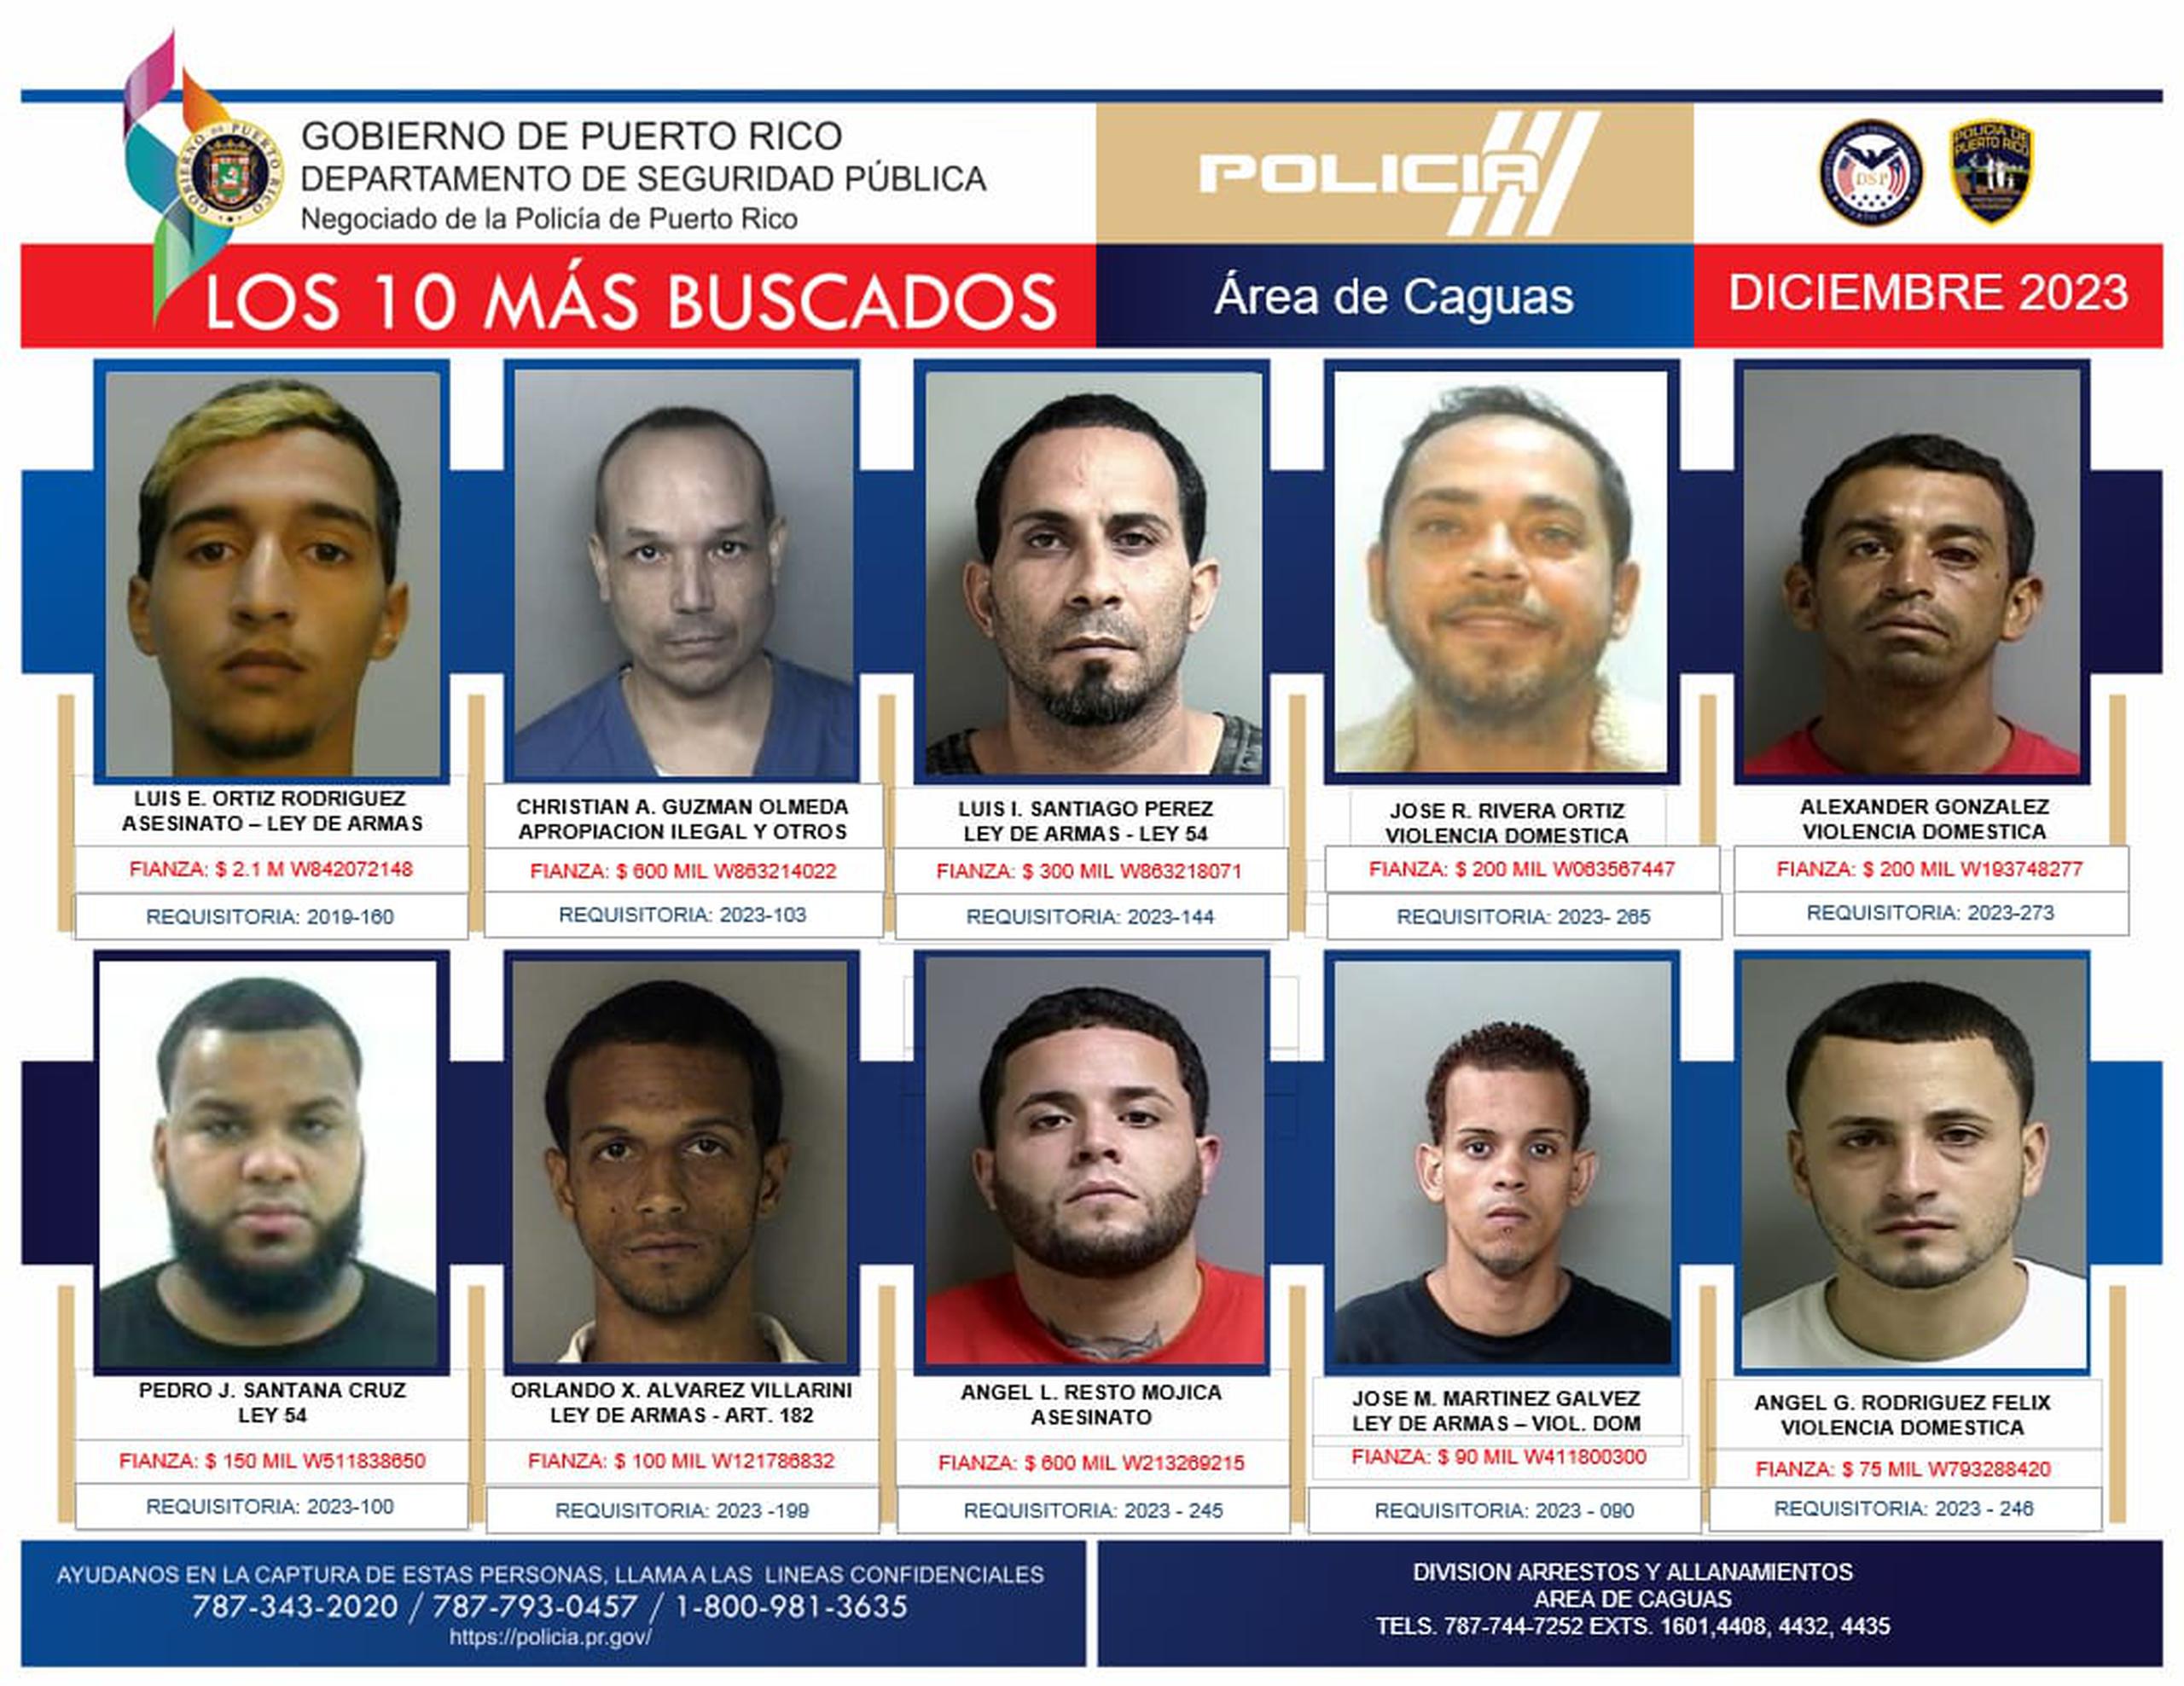 Si conoce el paradero de alguno de estos fugitivos llame a la División de Arrestos Especiales y Allanamientos de Caguas al teléfono (787) 744-7252 extensiones 1601, 4408, 4432y 4435.